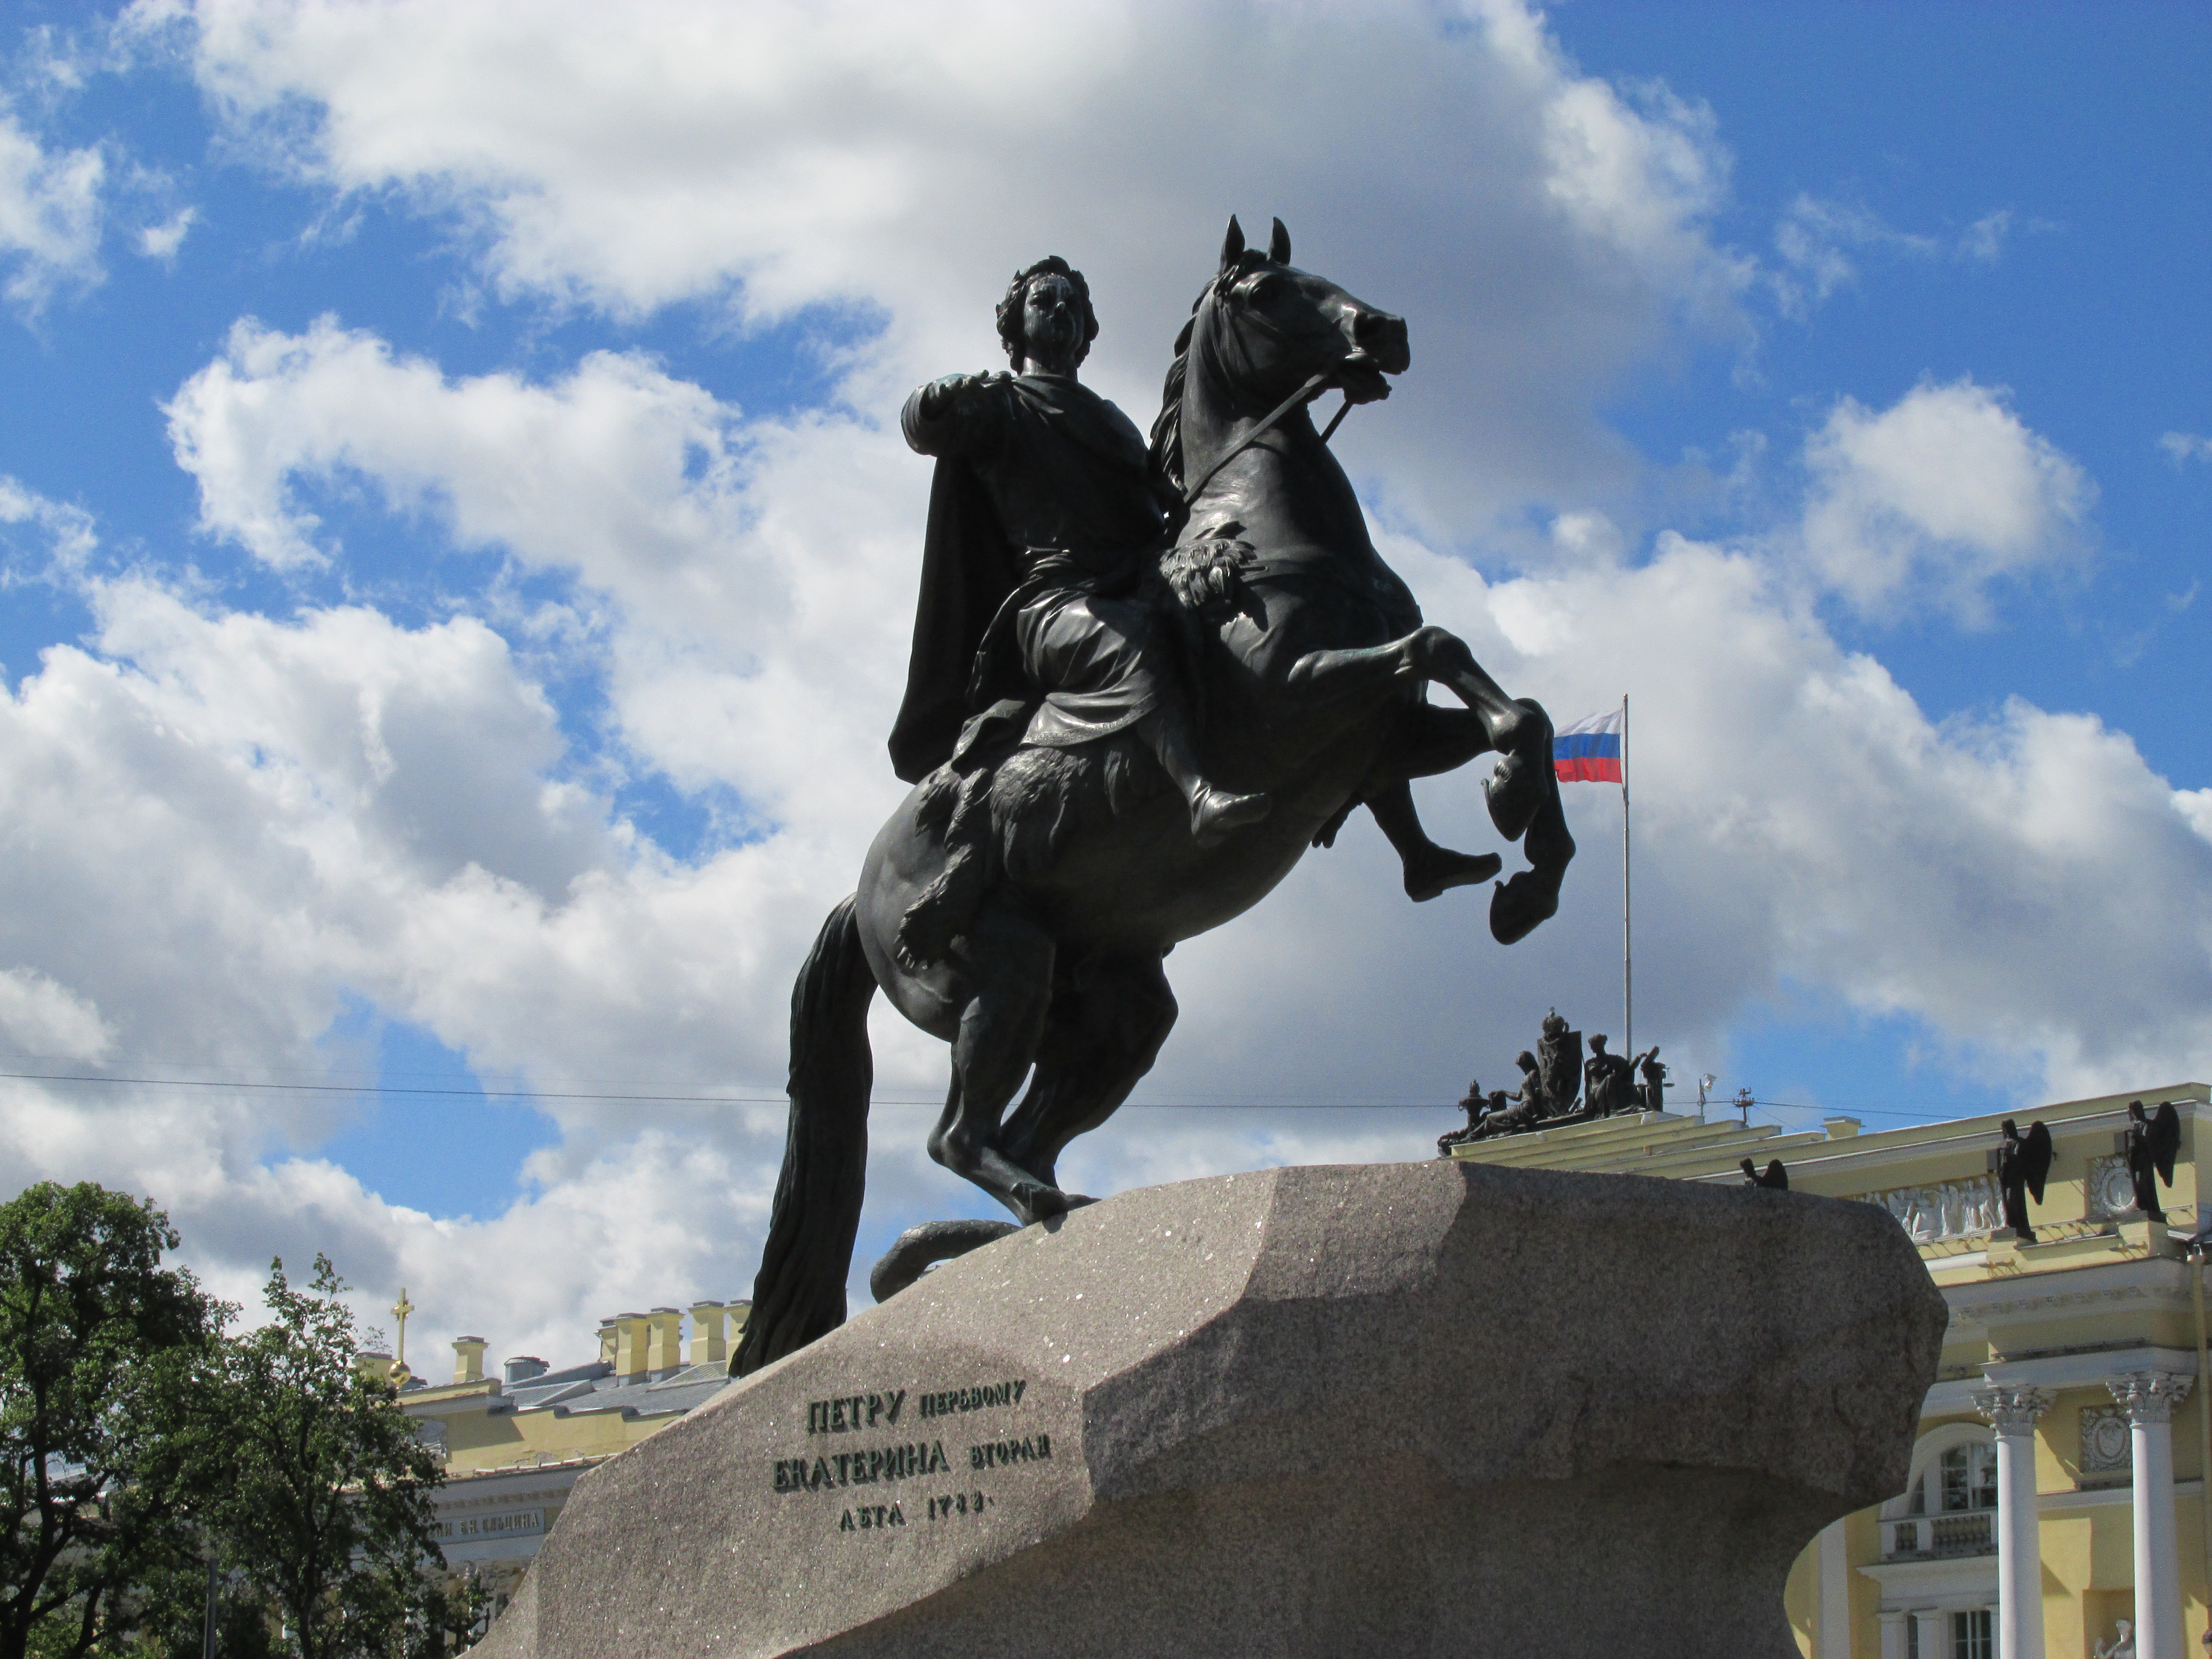 广场中央有一个圆形的大草坪,中央竖立著彼得大帝骑马雕像